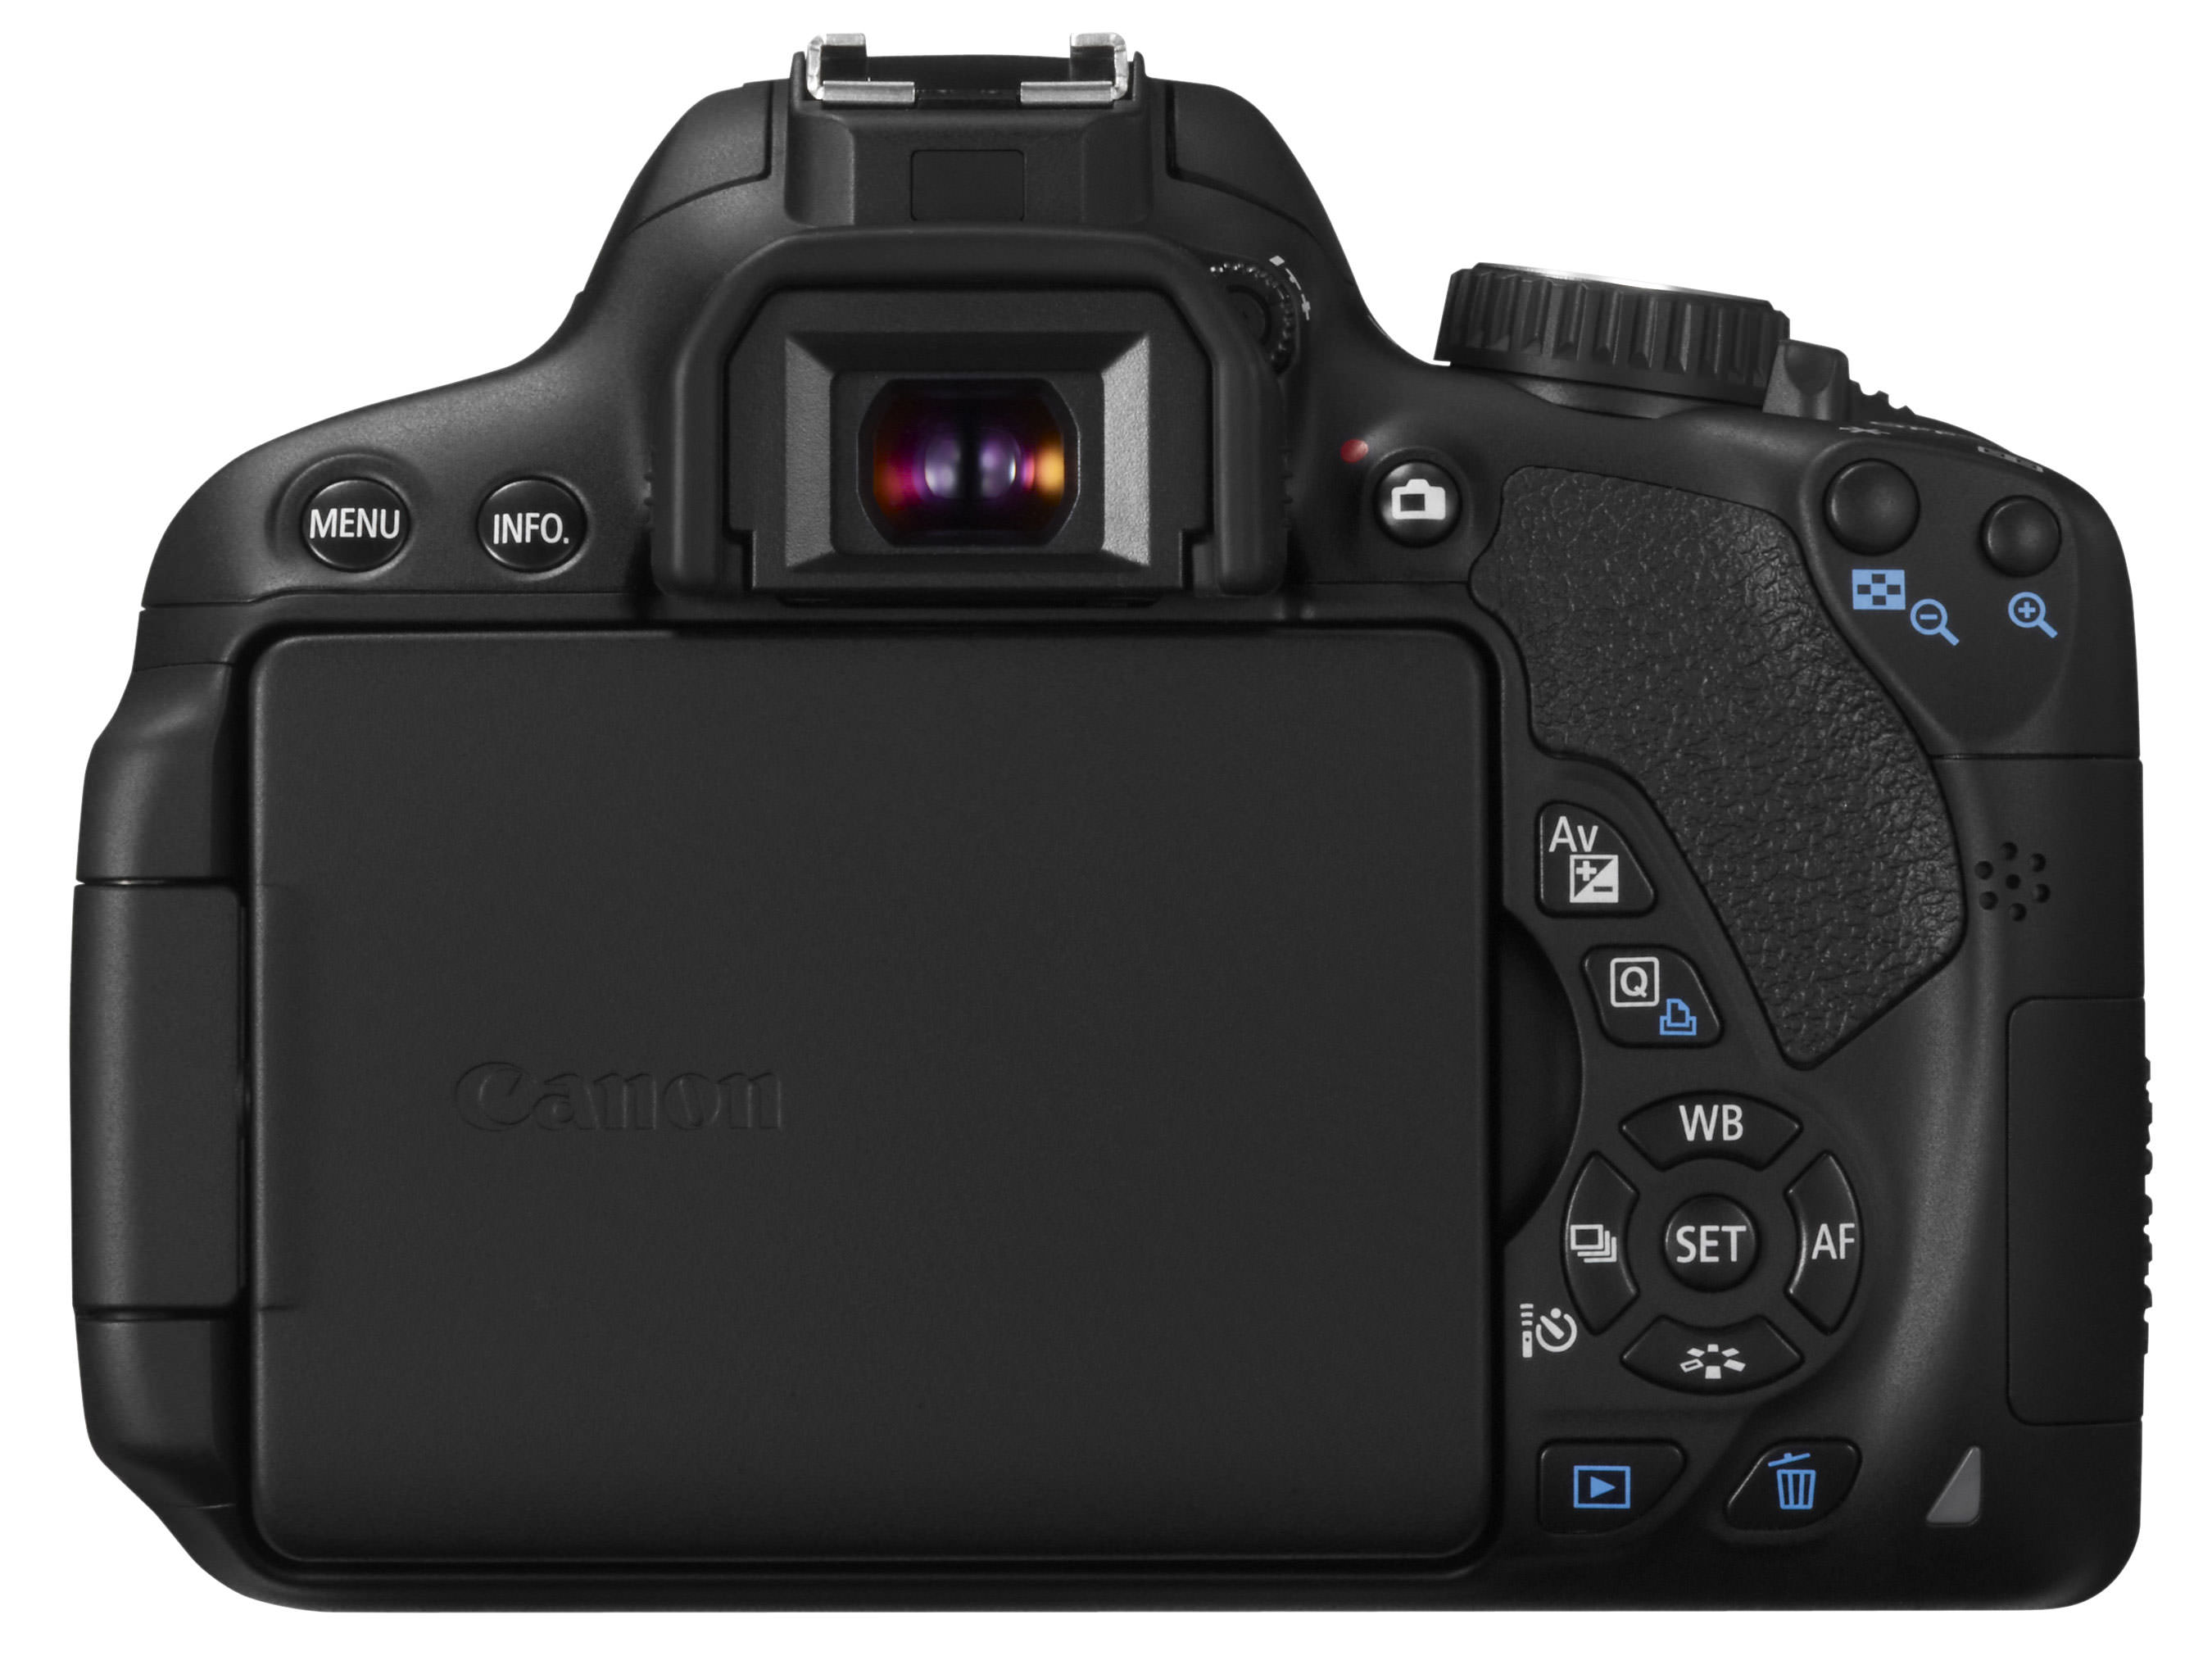 Canon EOS 650D len 18-55mm IS II